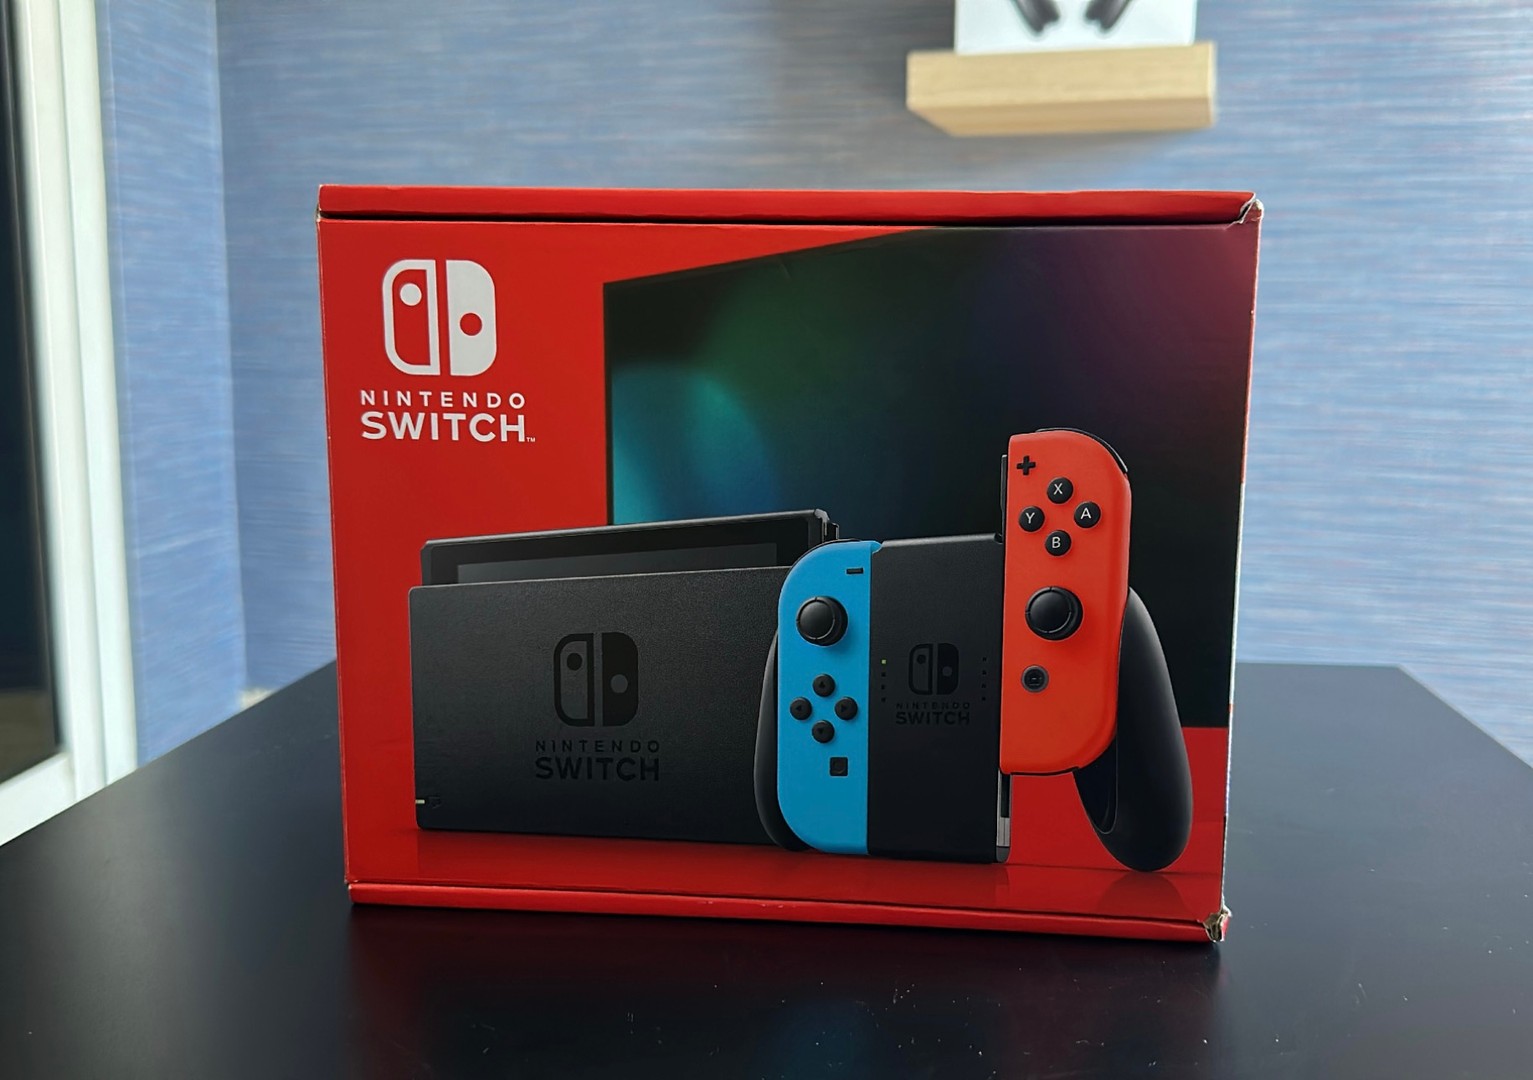 Vendo Consola Nintendo Switch Version Mejorada Nuevos Sellados, RD$ 16,500 NEG